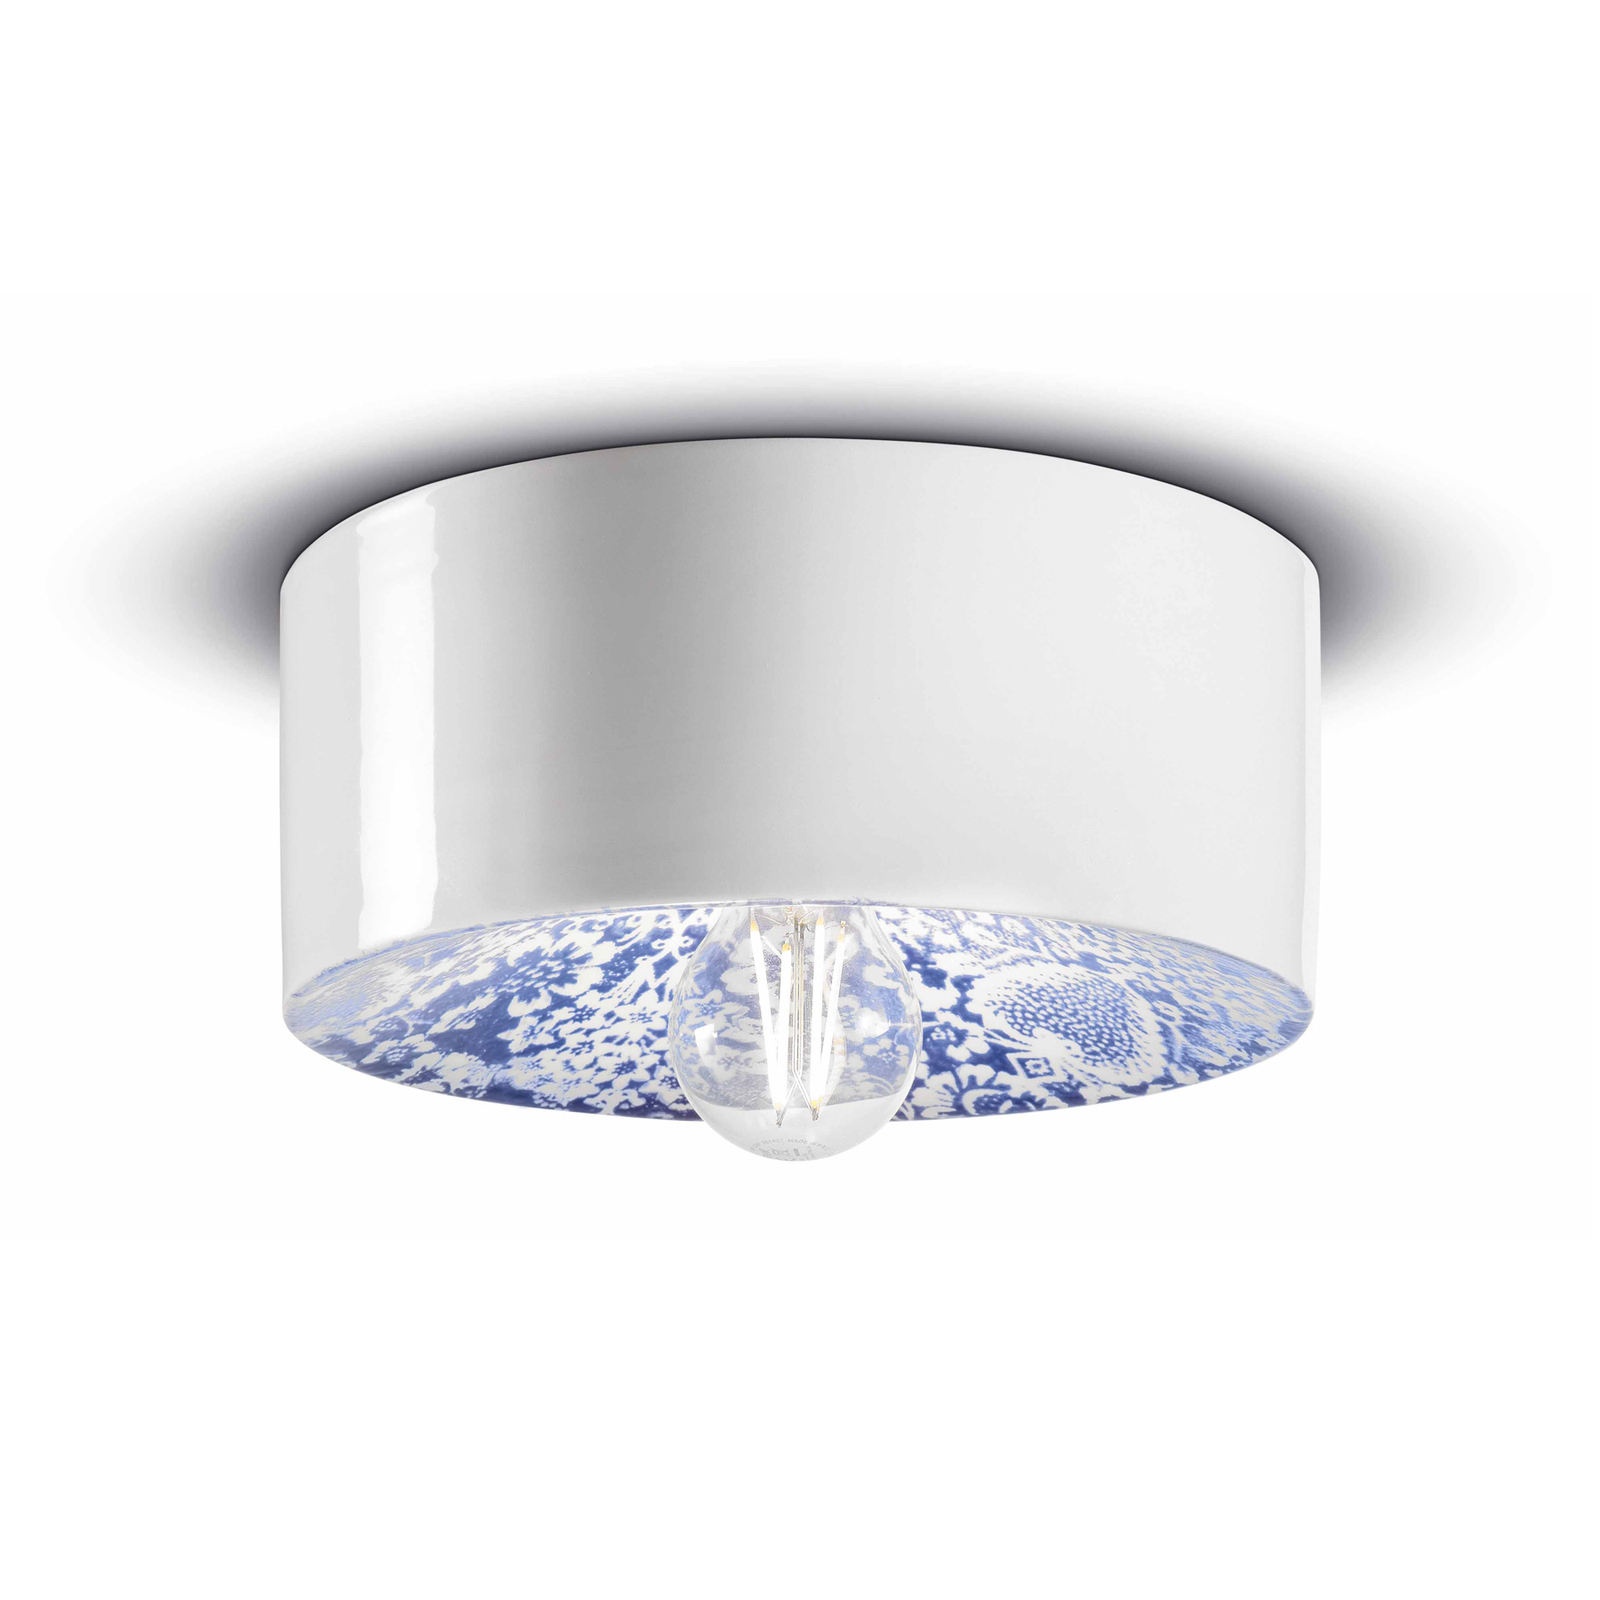 Lampa sufitowa PI w kwiatowy wzór, Ø 25 cm niebiesko-biała